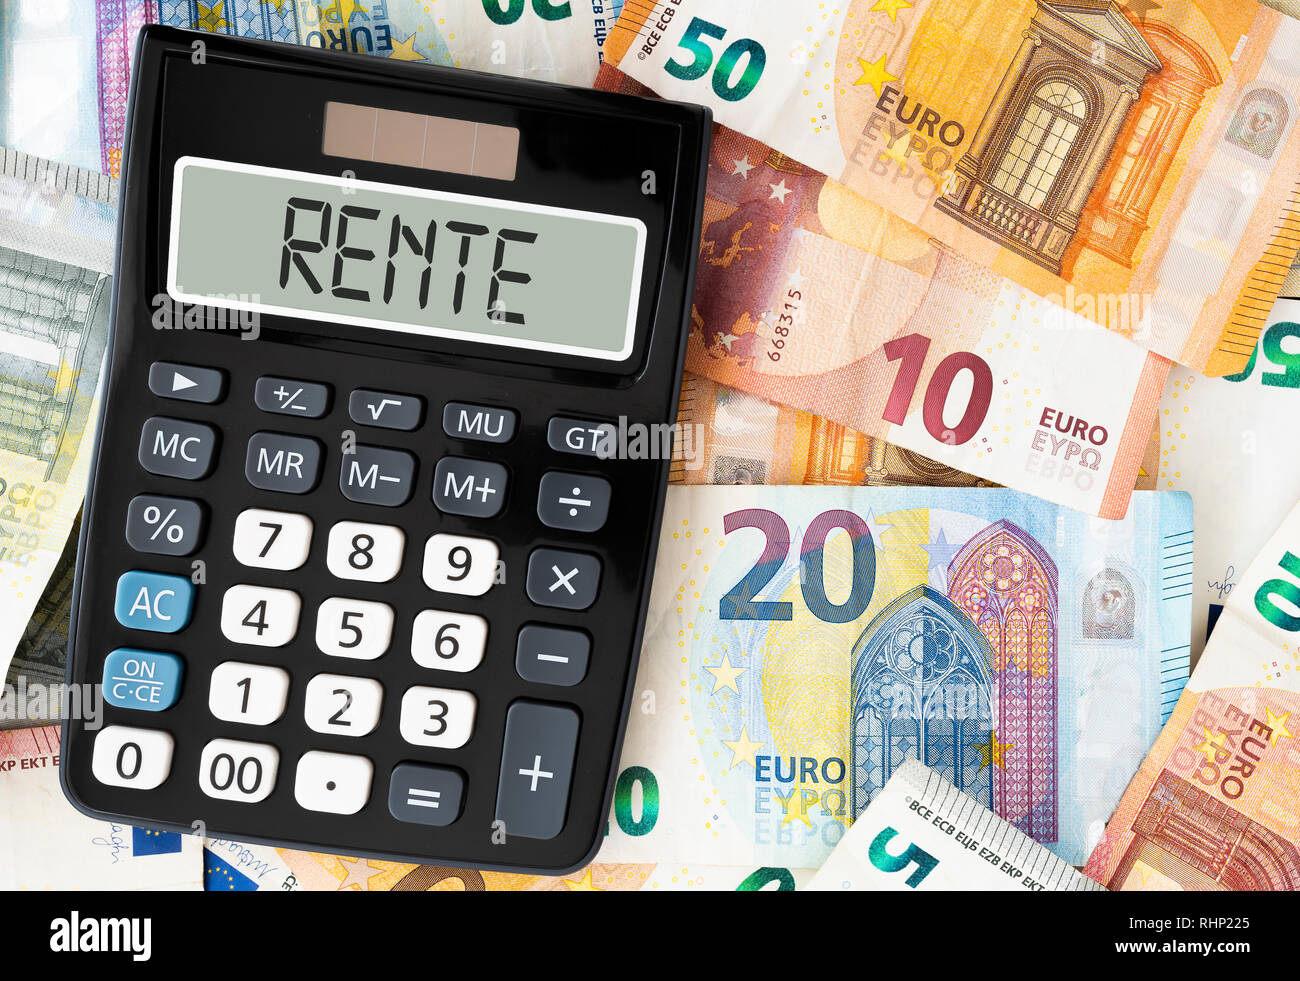 Parola tedesca RENTE (pensione) sul display della calcolatrice tascabile contro la carta moneta Foto Stock